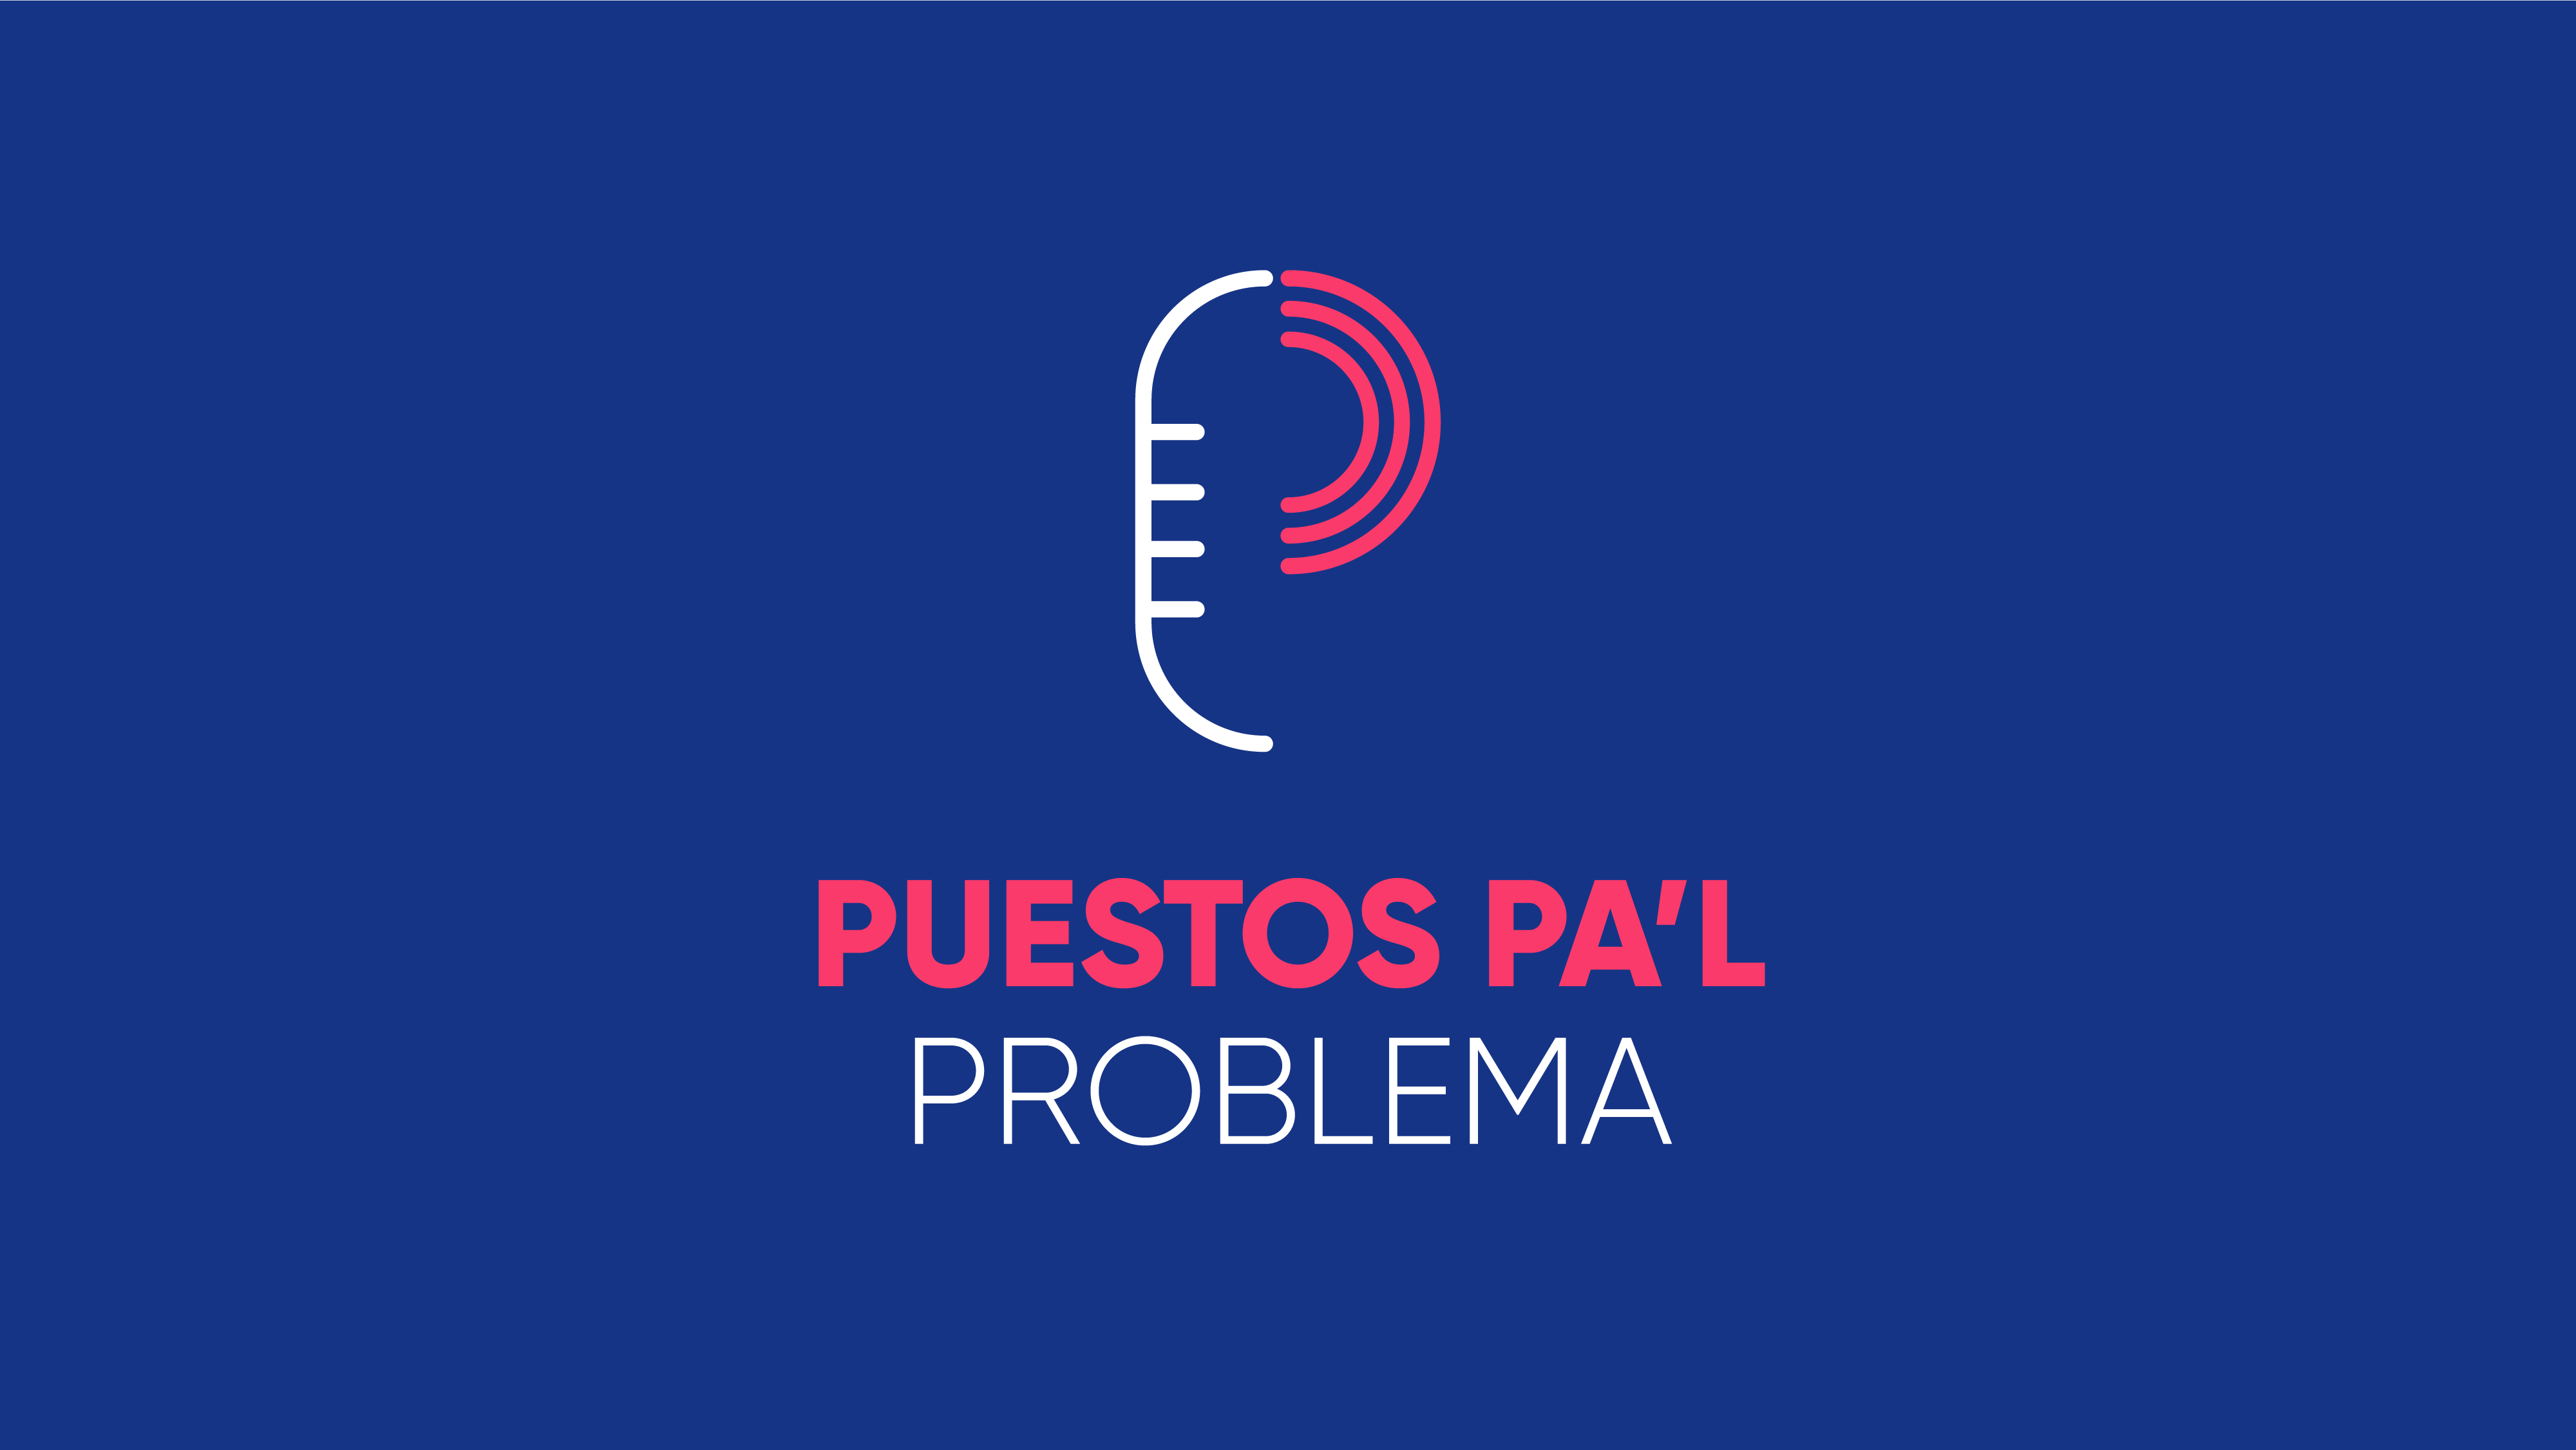 PPP Extra: Ricky Rosselló insiste en votar en Puerto Rico + Puestos Pa'l Internet con Gino Villarini de Aeronet